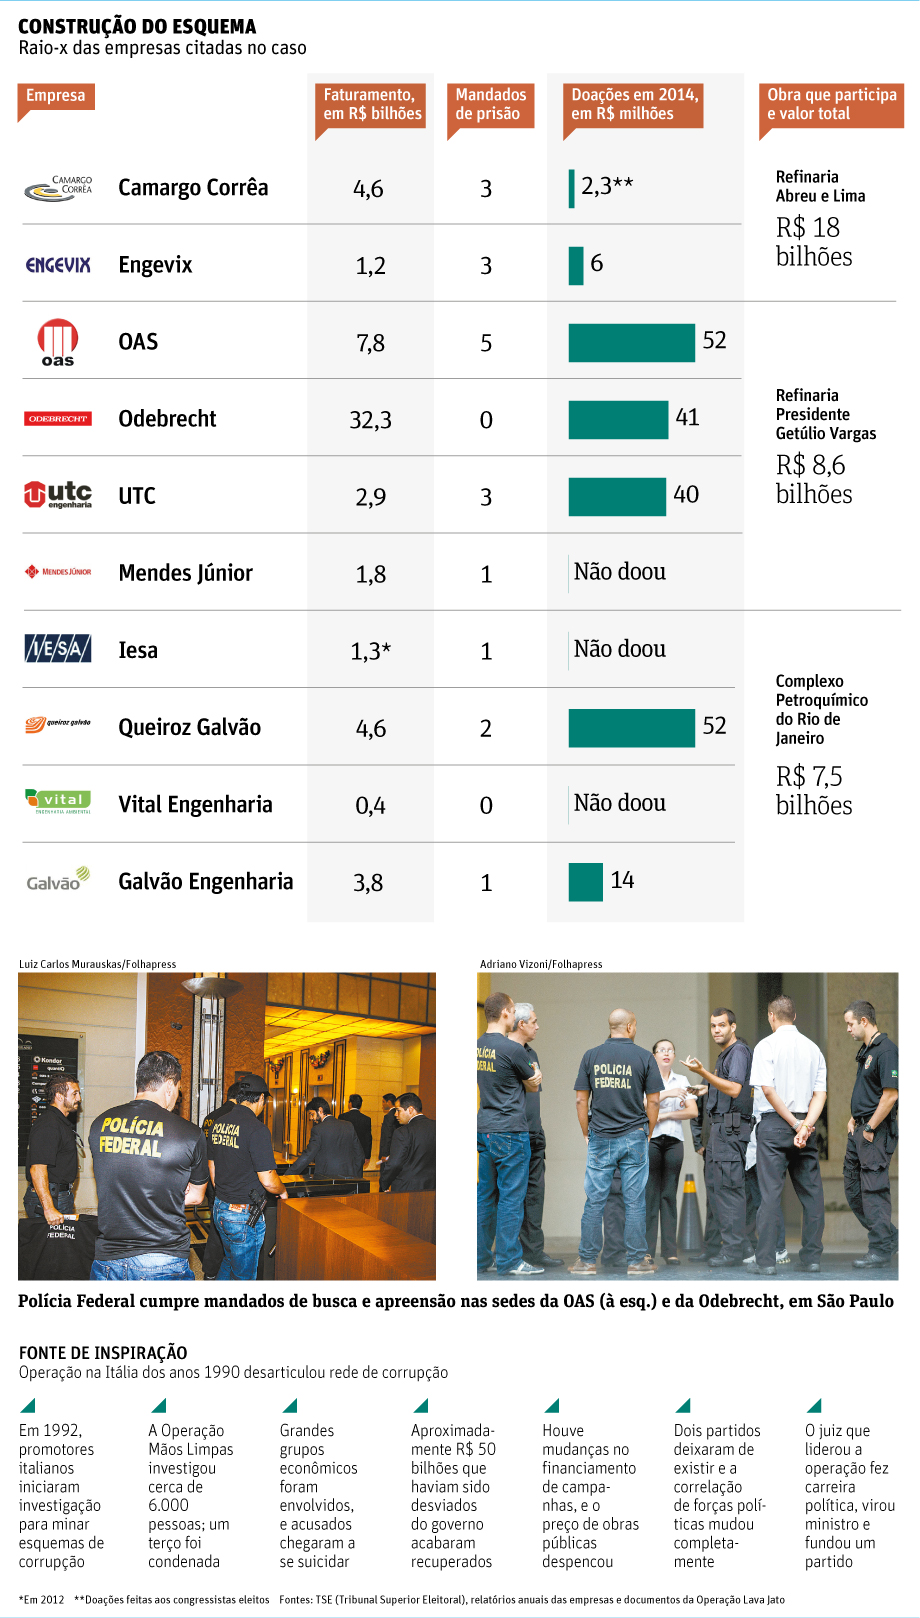 Folha de So Paulo - 15/11/14 - Petrobras: construo do esquema de corrupo - Folhapress